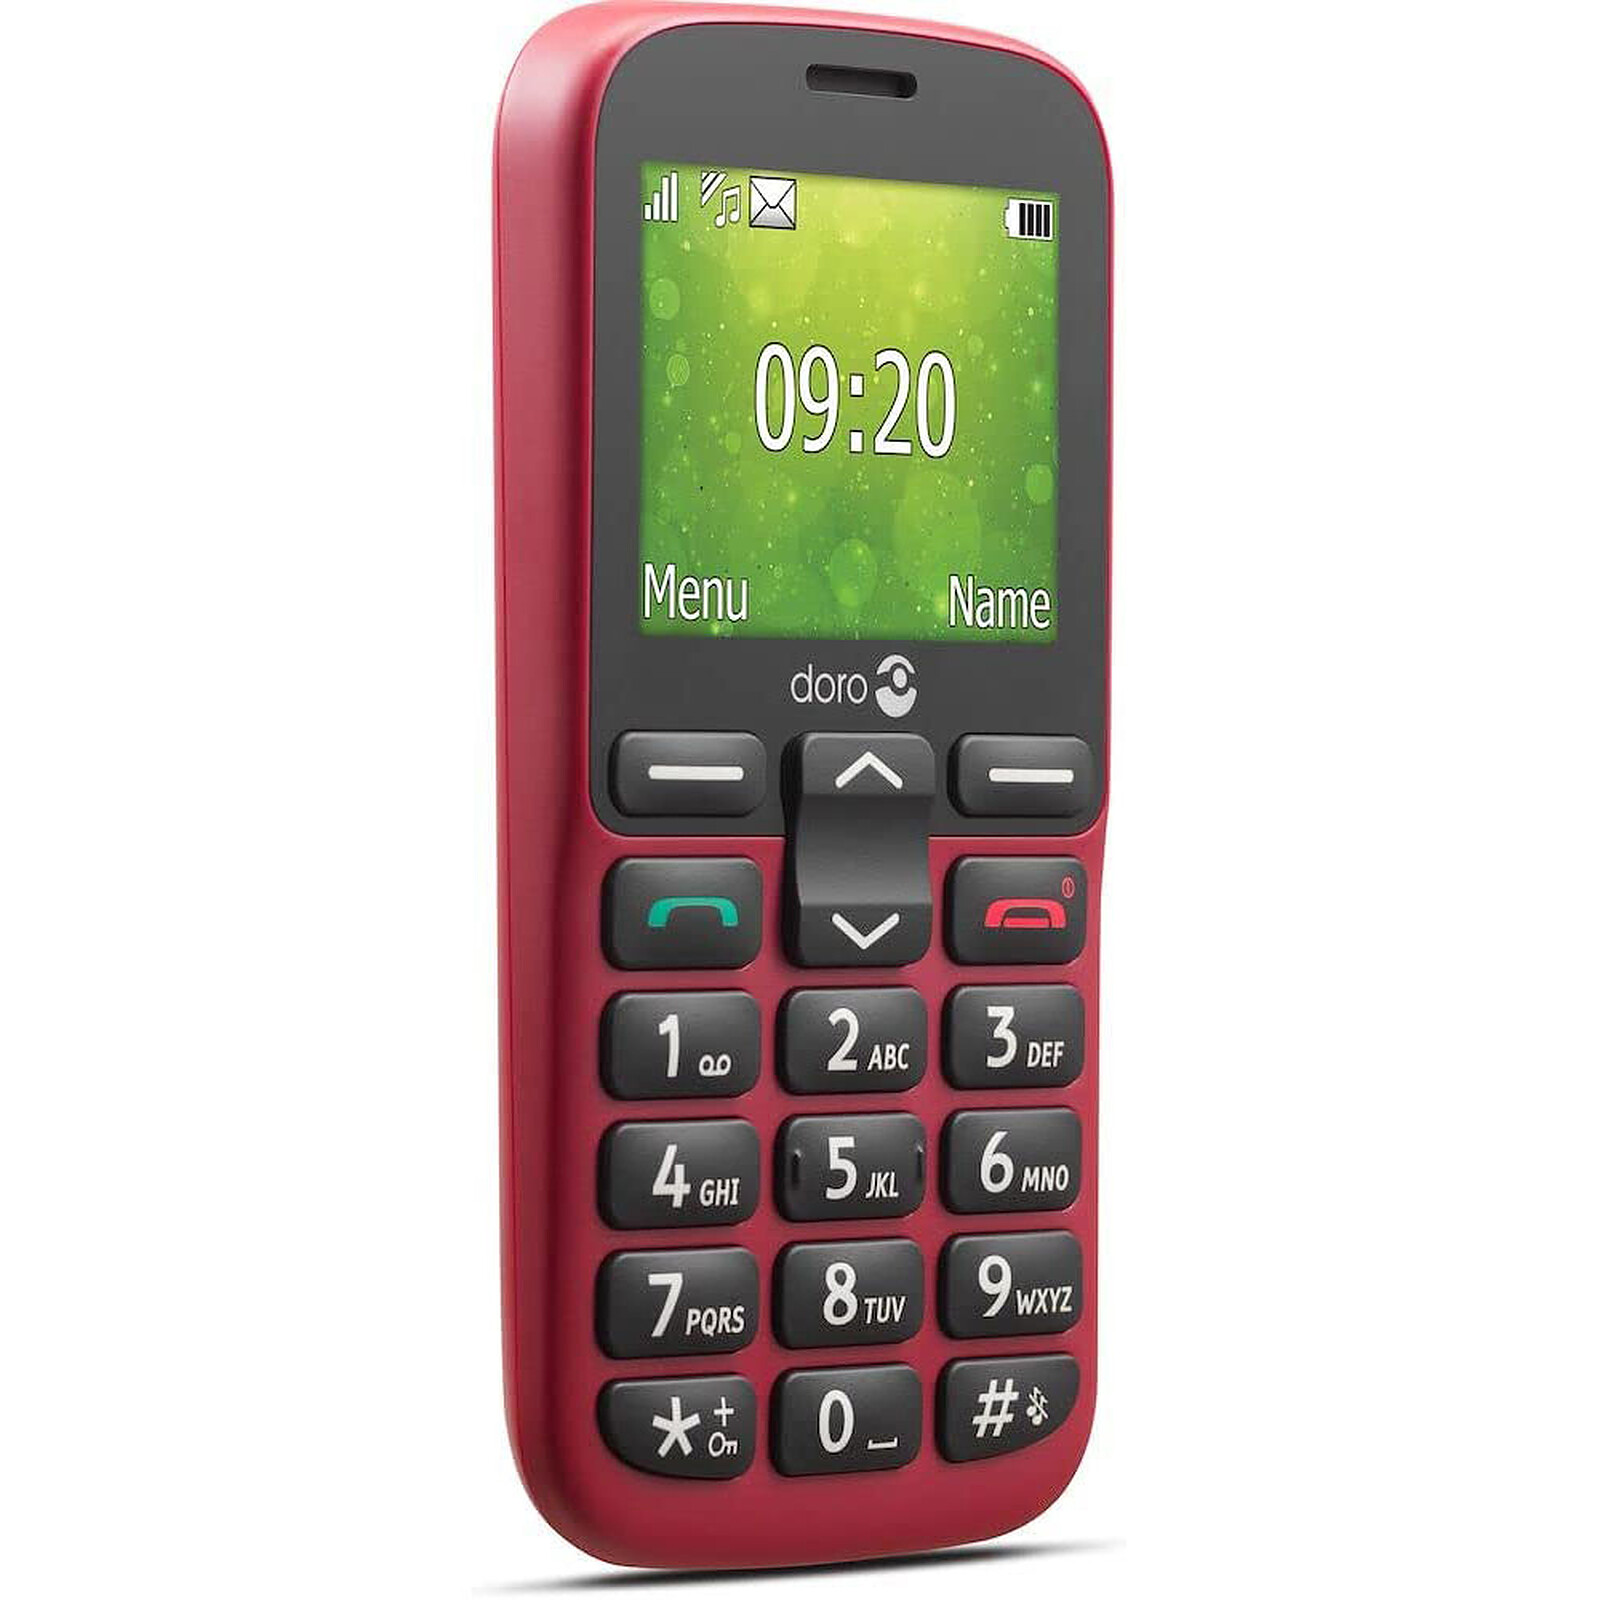 DORO Téléphone portable Doro 6060 - Noir pas cher 